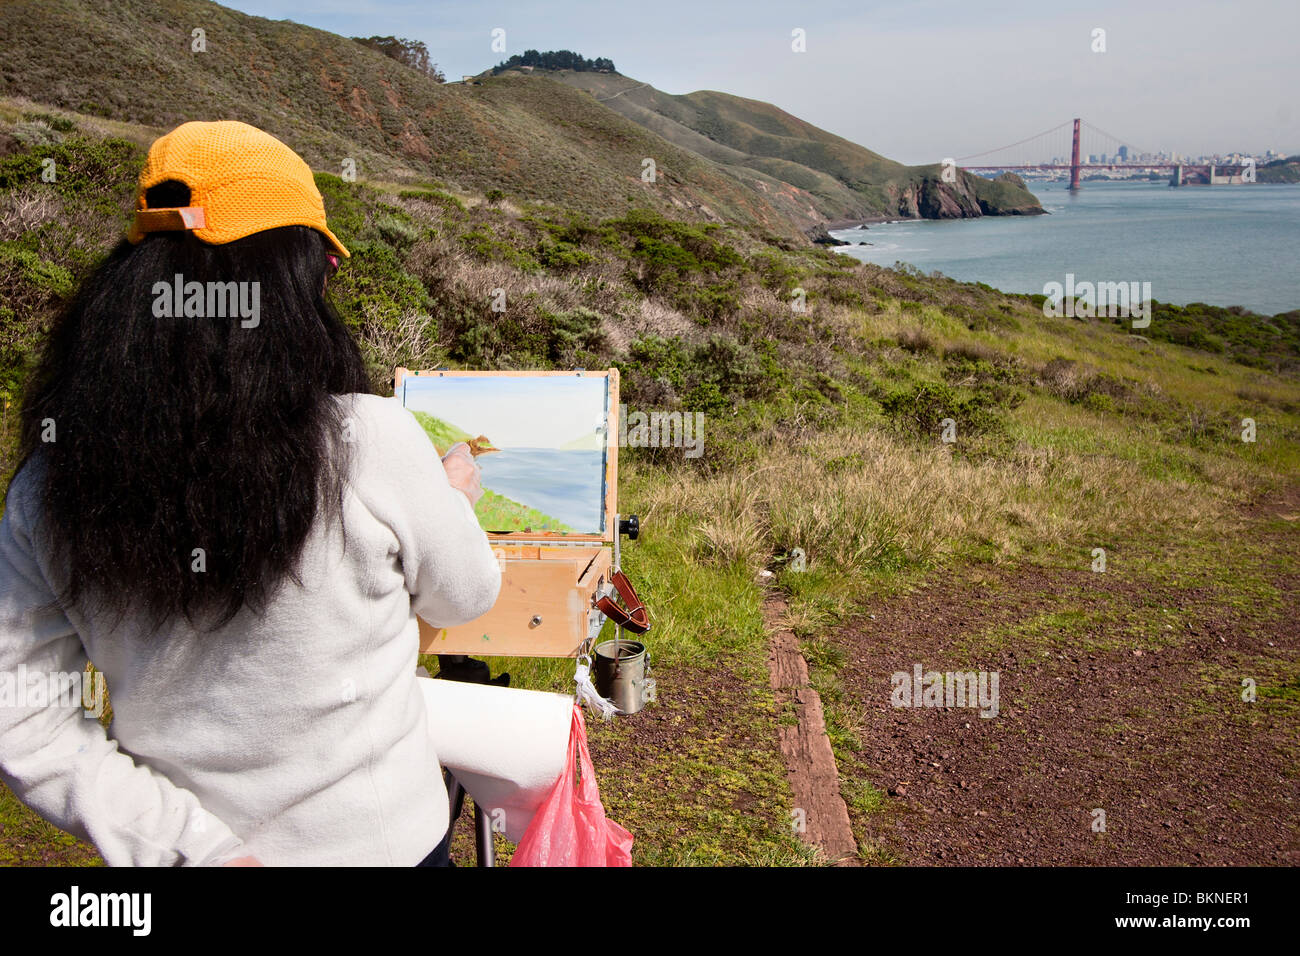 Une femme peint une scène de paysage de la baie de San Francisco Brdige à San Francisco, Californie. Banque D'Images